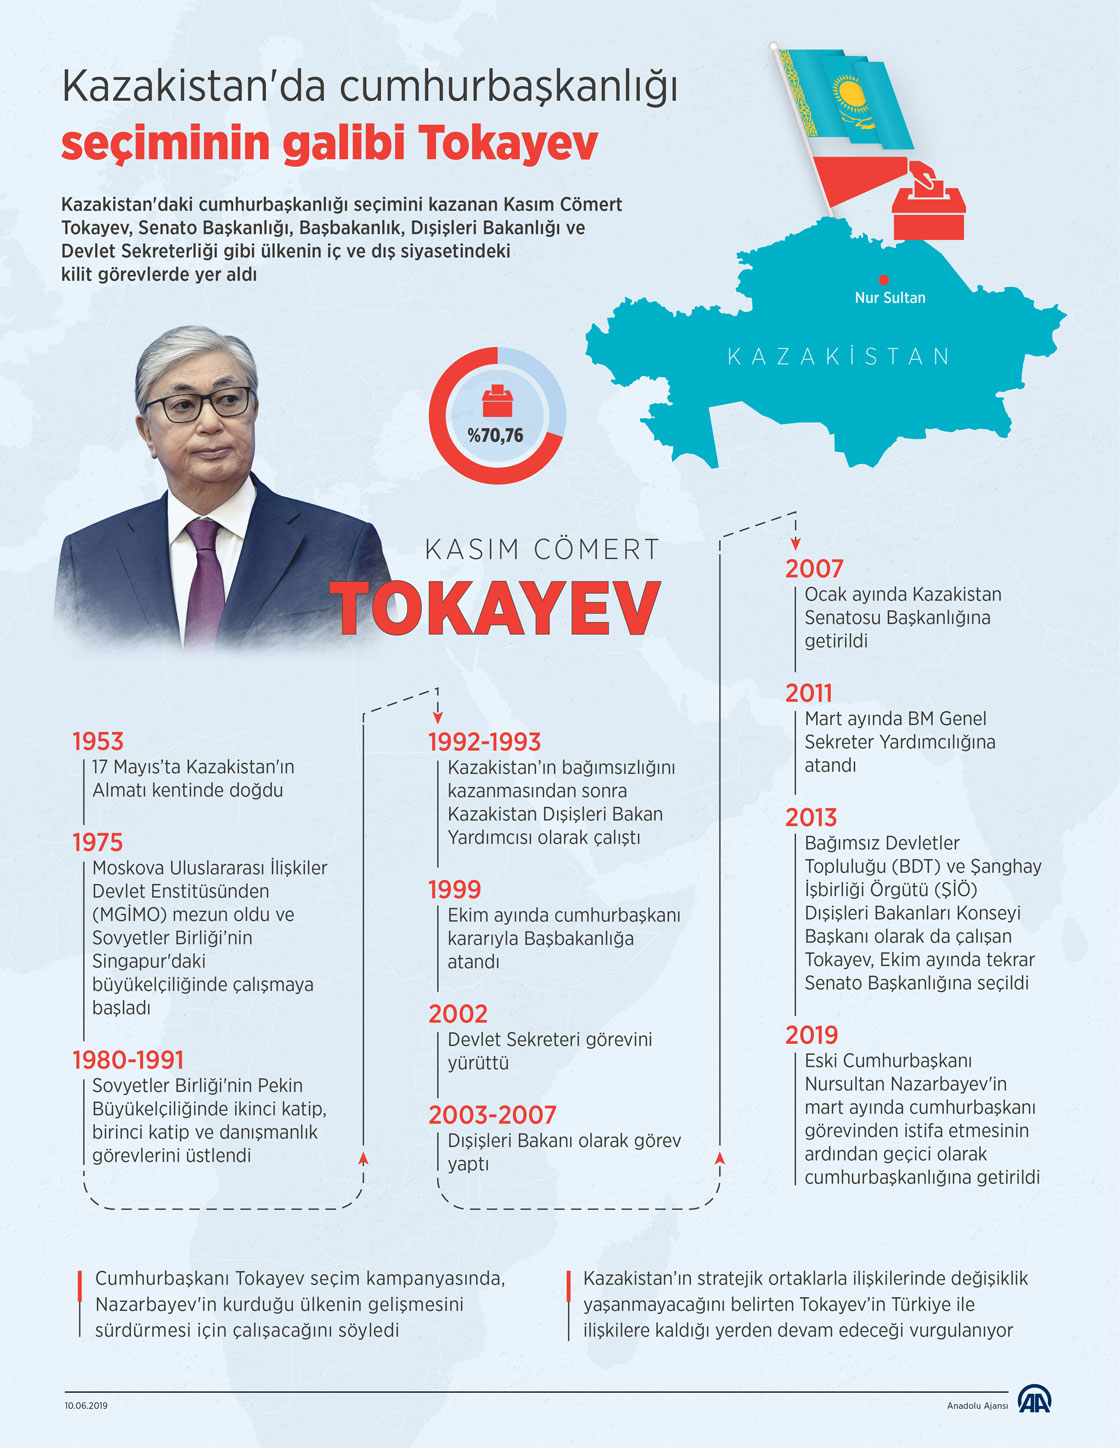 Kazakistan'da cumhurbaşkanlığı seçiminin galibi Tokayev